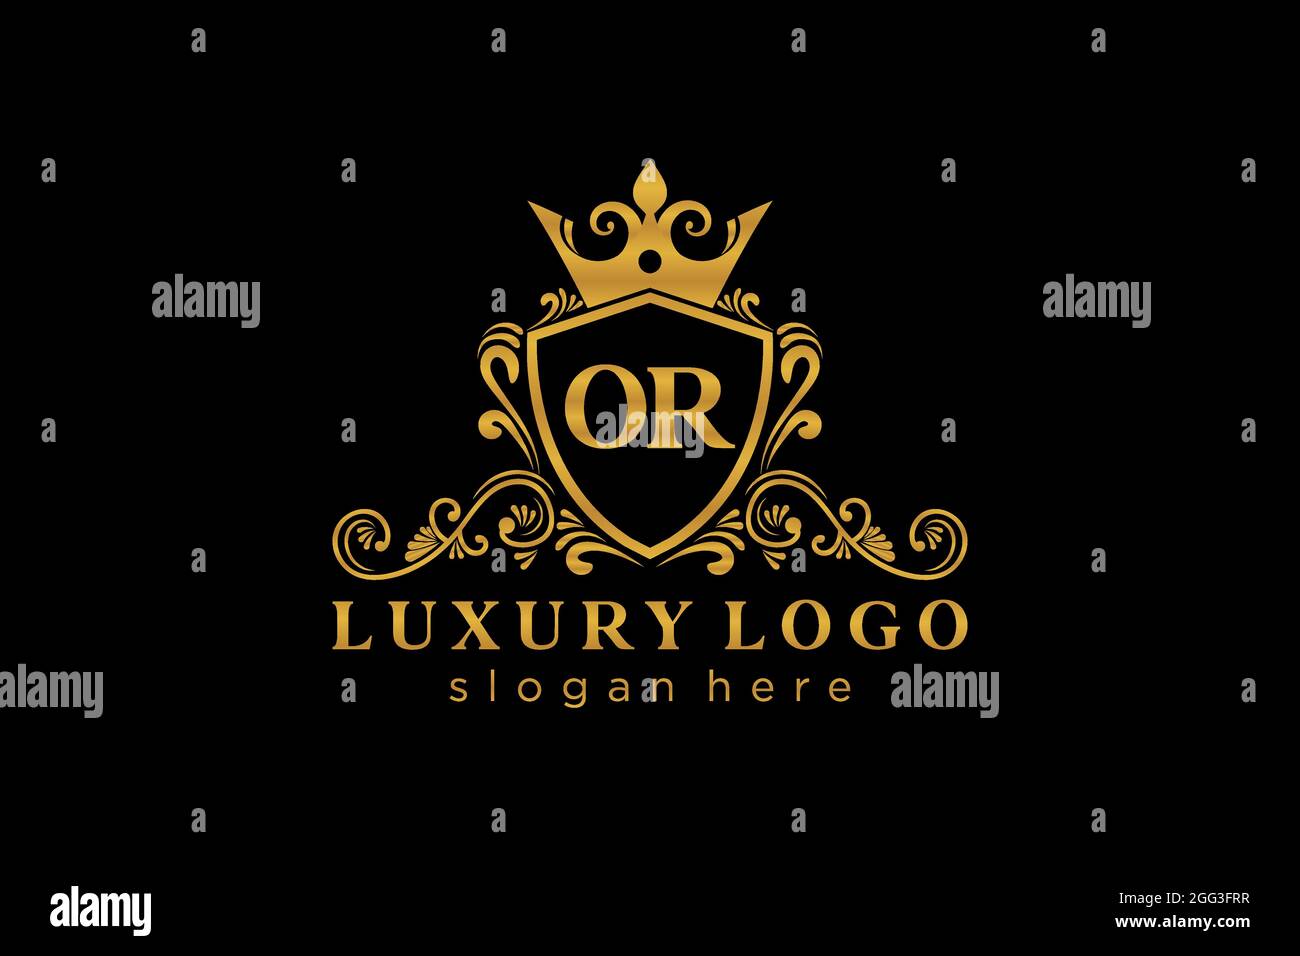 ODER Vorlage für das Royal Luxury Logo in Vektorgrafiken für Restaurant, Royalty, Boutique, Café, Hotel, Heraldisch, Schmuck, Mode und andere Vektor illustrr Stock Vektor